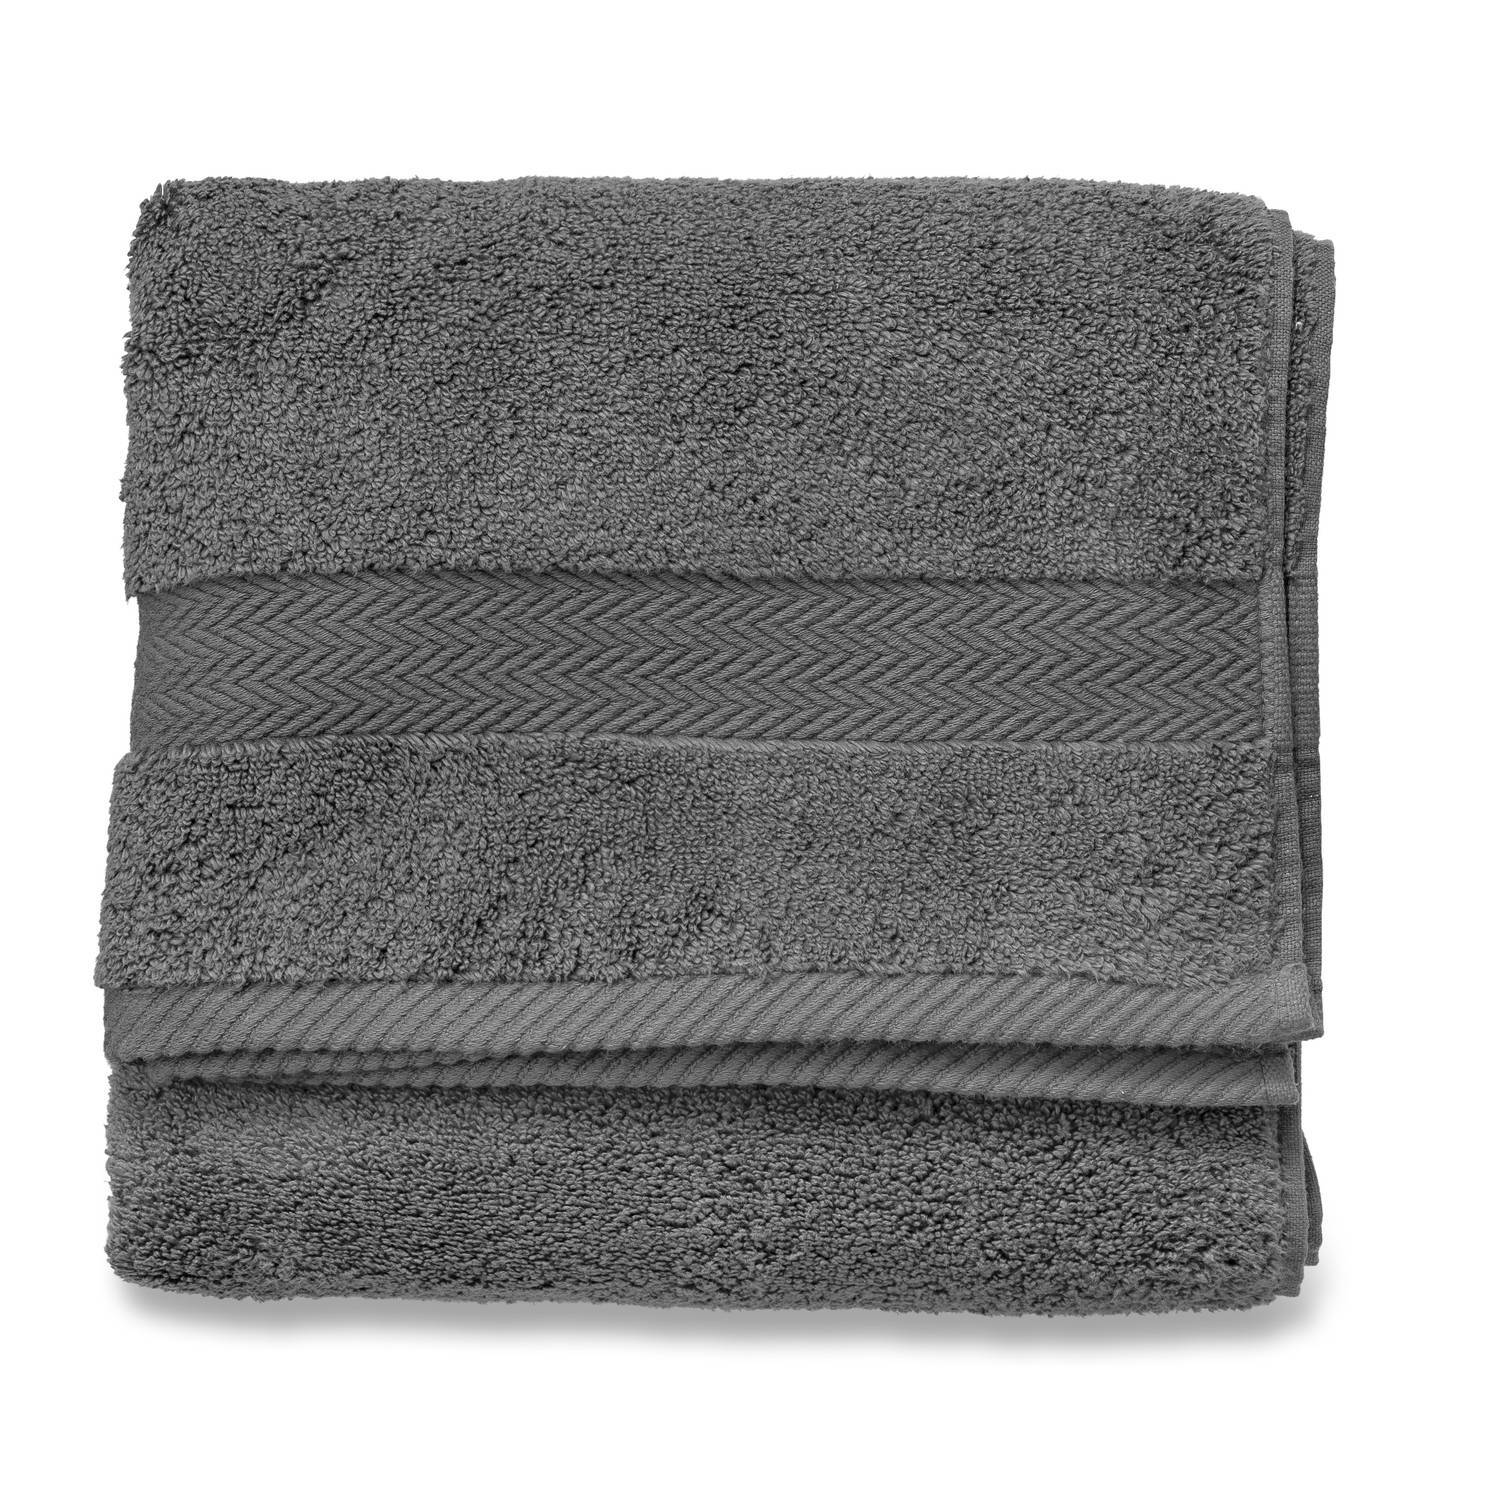 Blokker handdoek 600g - antraciet - 60x110 cm